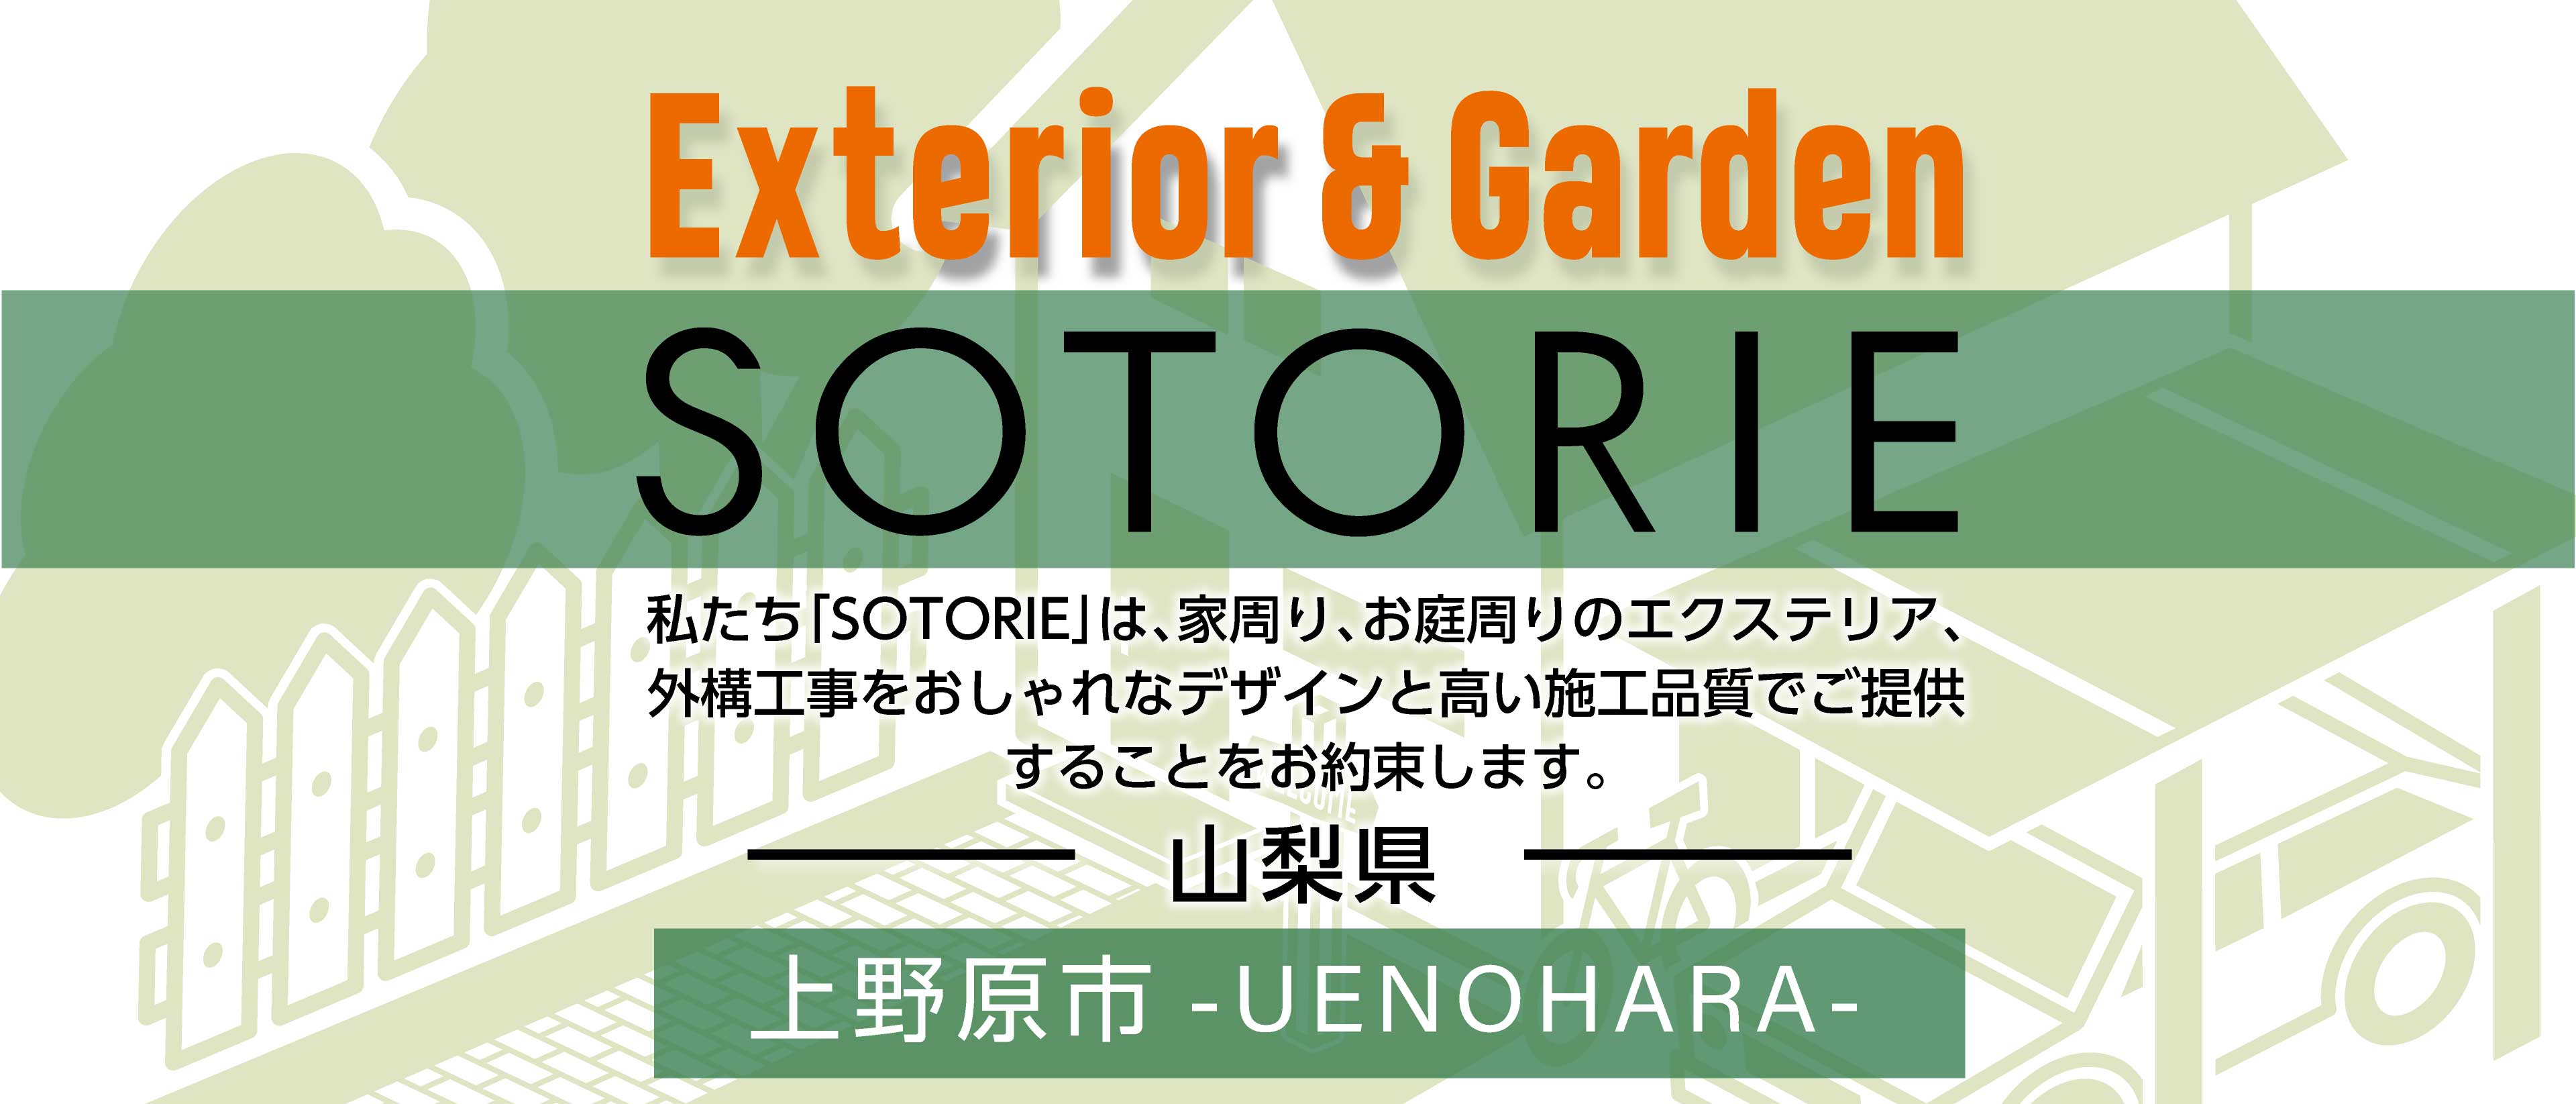 ソトリエ上野原市では、家周りと庭周りの外構、エクステリア工事をおしゃれなデザインと高い施工品質でご提供することをお約束します。